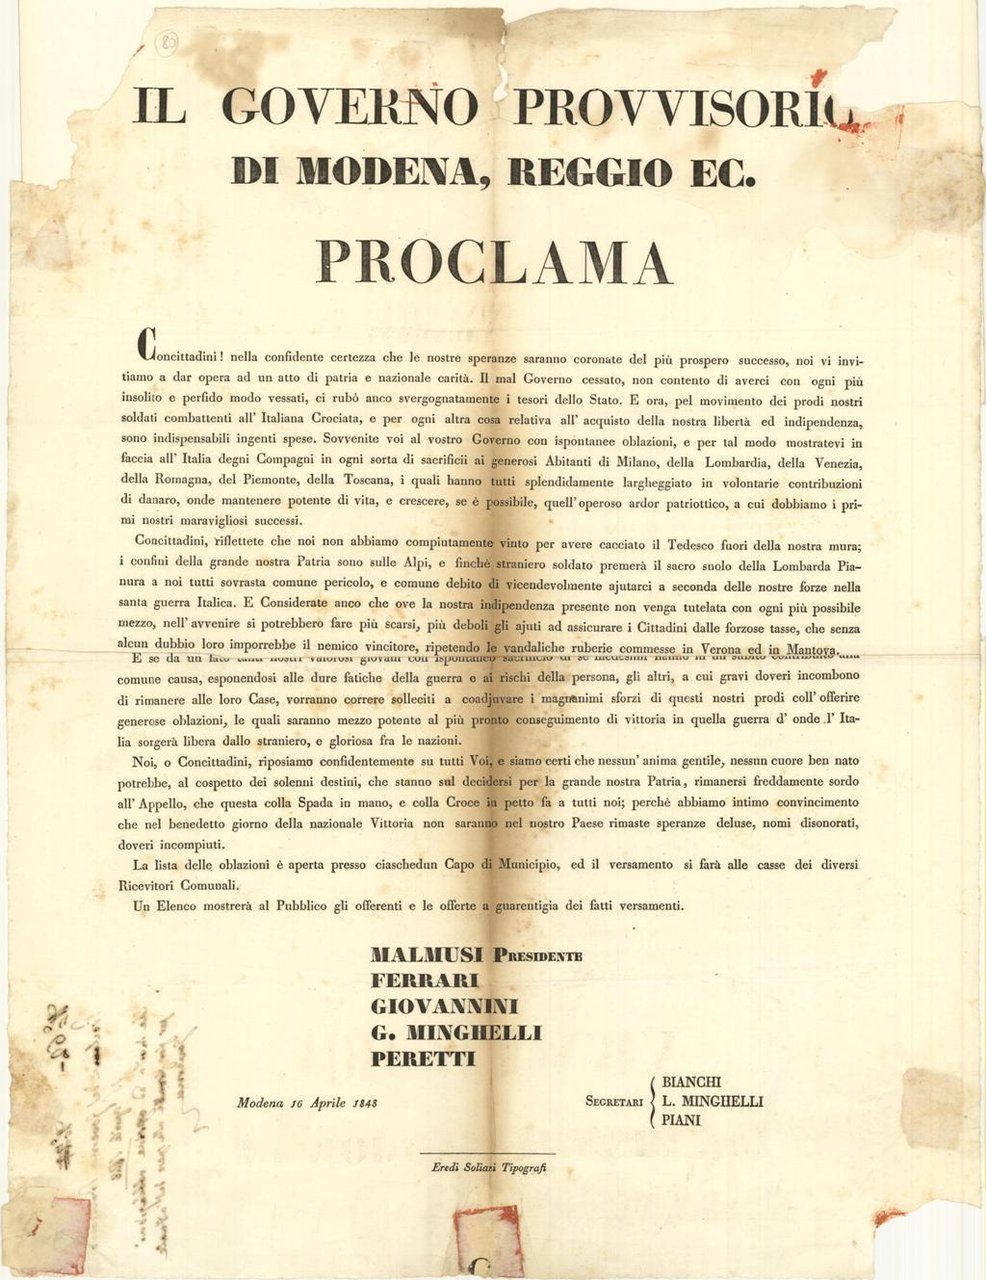 Il Governo provvisorio di Modena, Reggio ec. Proclama